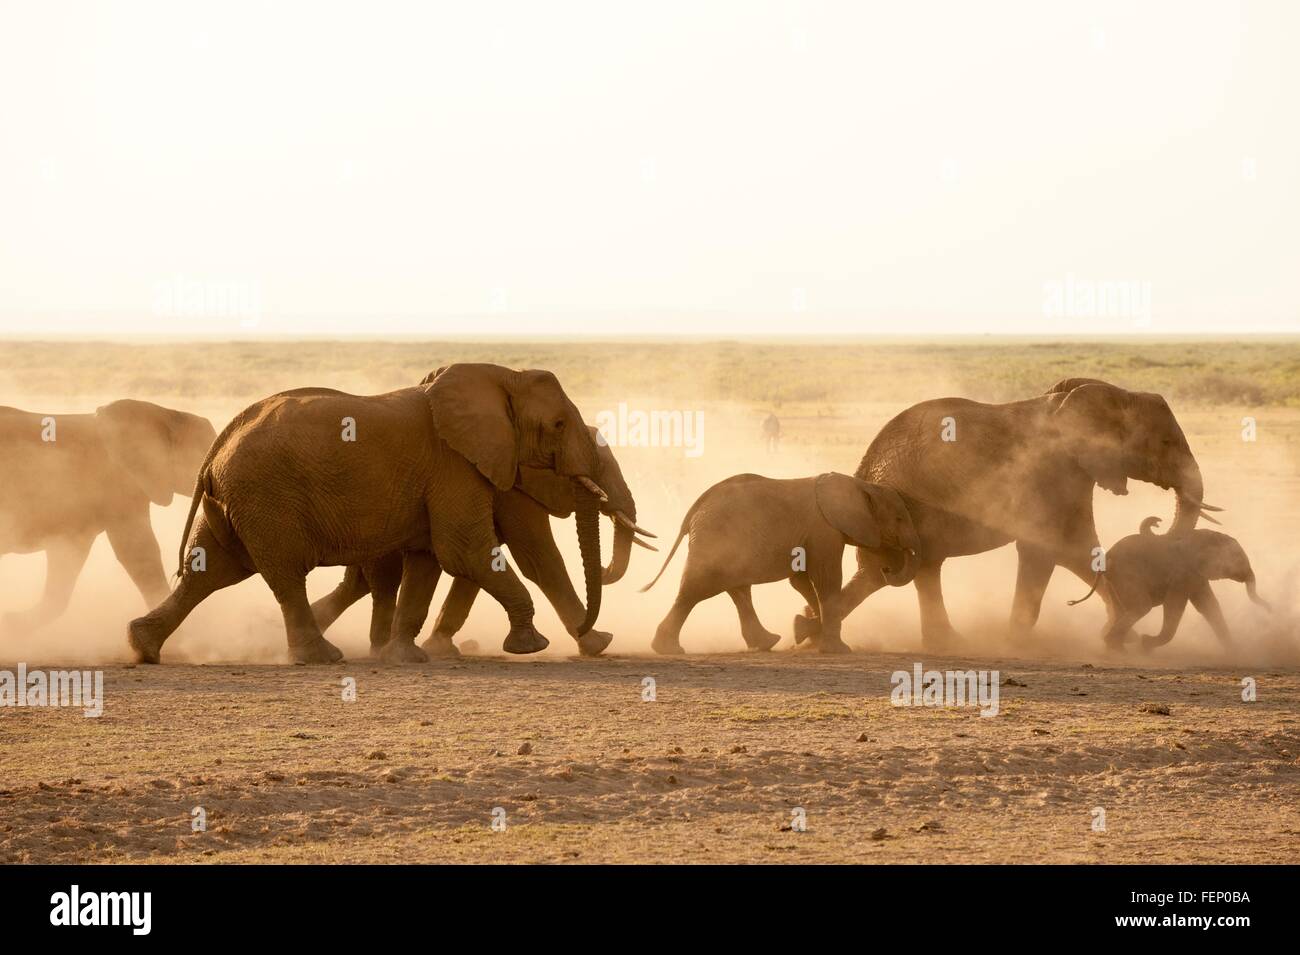 African elephants (Loxodonta africana), Amboseli National Park, Kenya, Africa Stock Photo